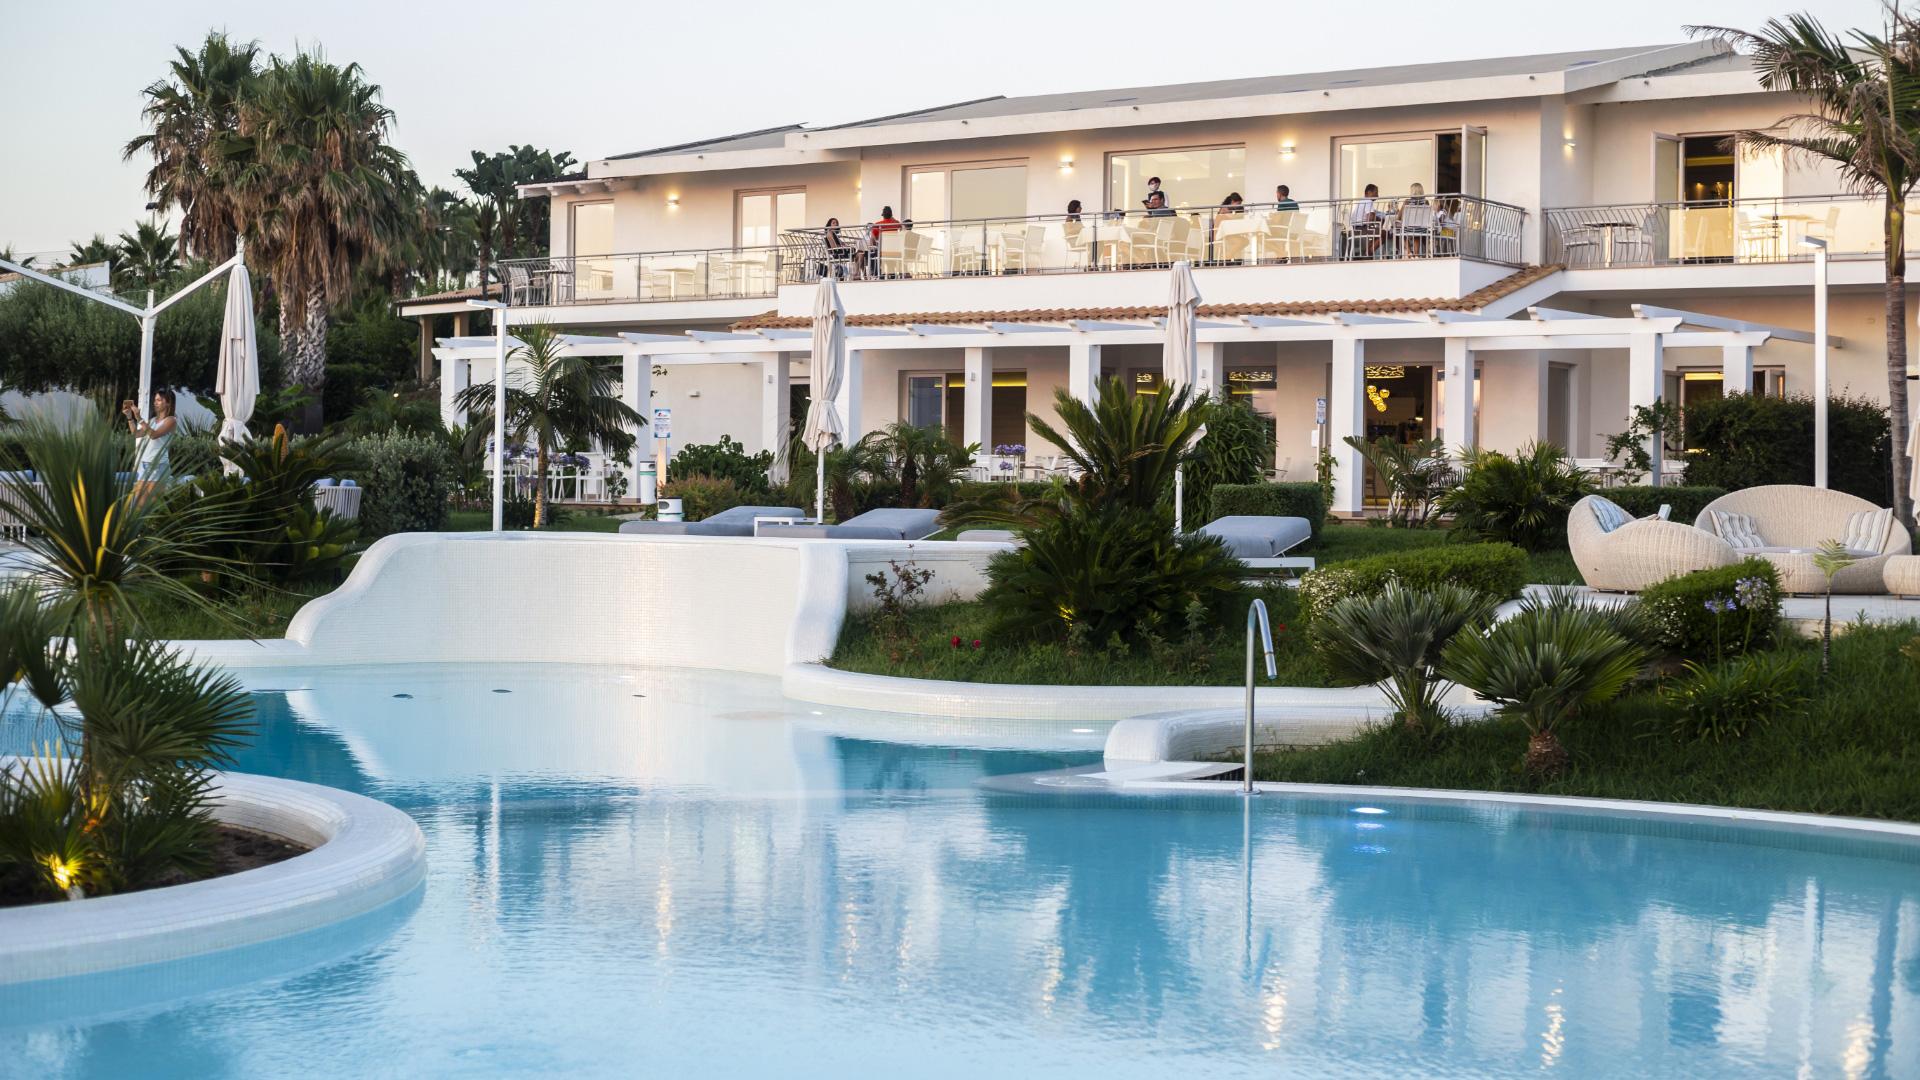 Complexe de luxe avec piscine et jardin tropical.